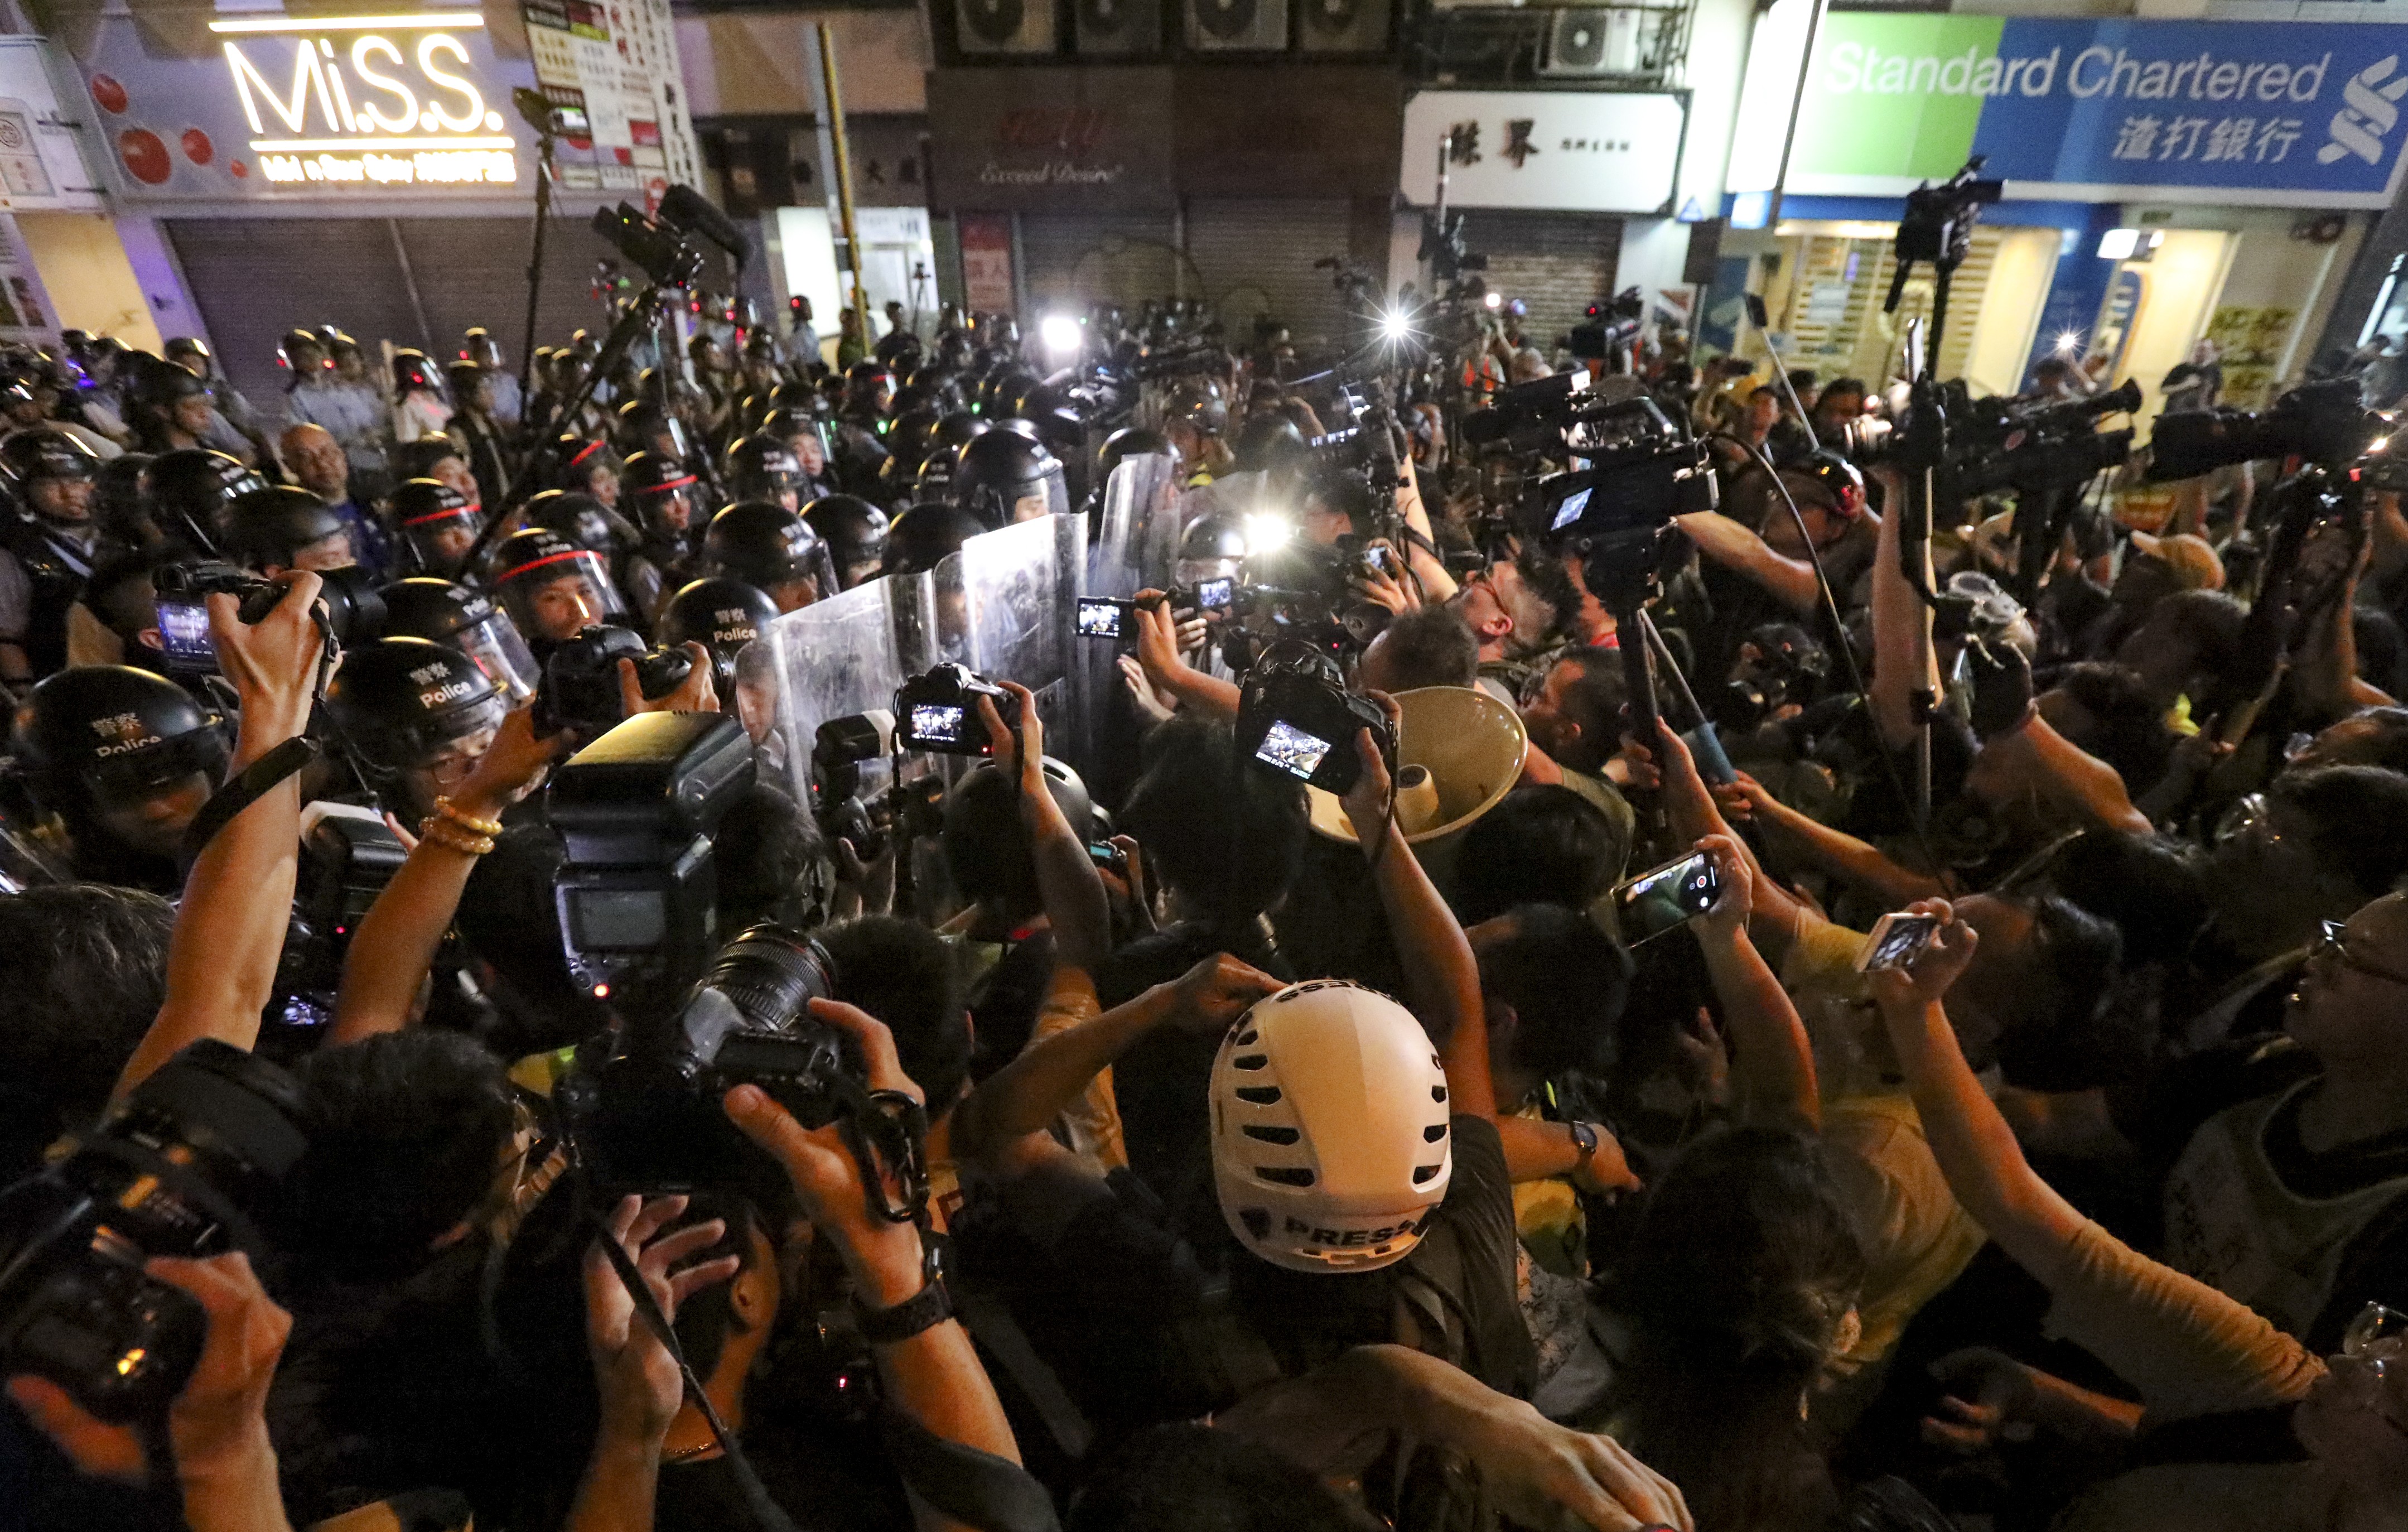 Βίαια επεισόδια και συλλήψεις σε αντικυβερνητικές διαδηλώσεις στο Χονγκ Κονγκ